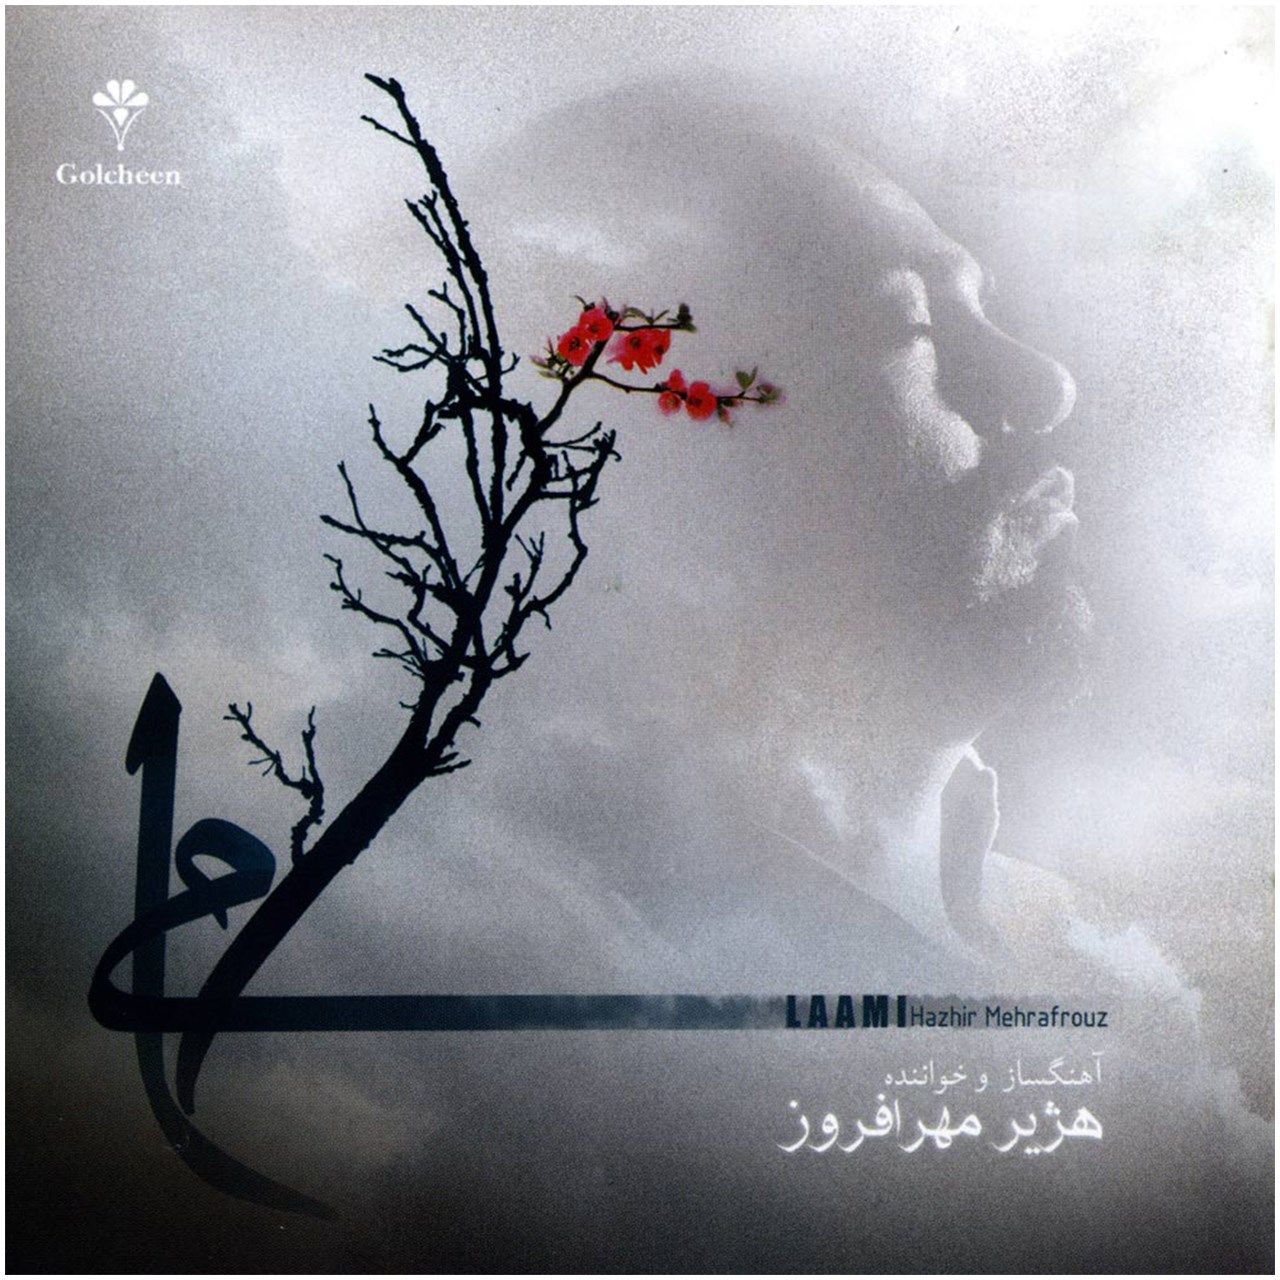 آلبوم موسیقی لامی اثر هژیر مهرافروز